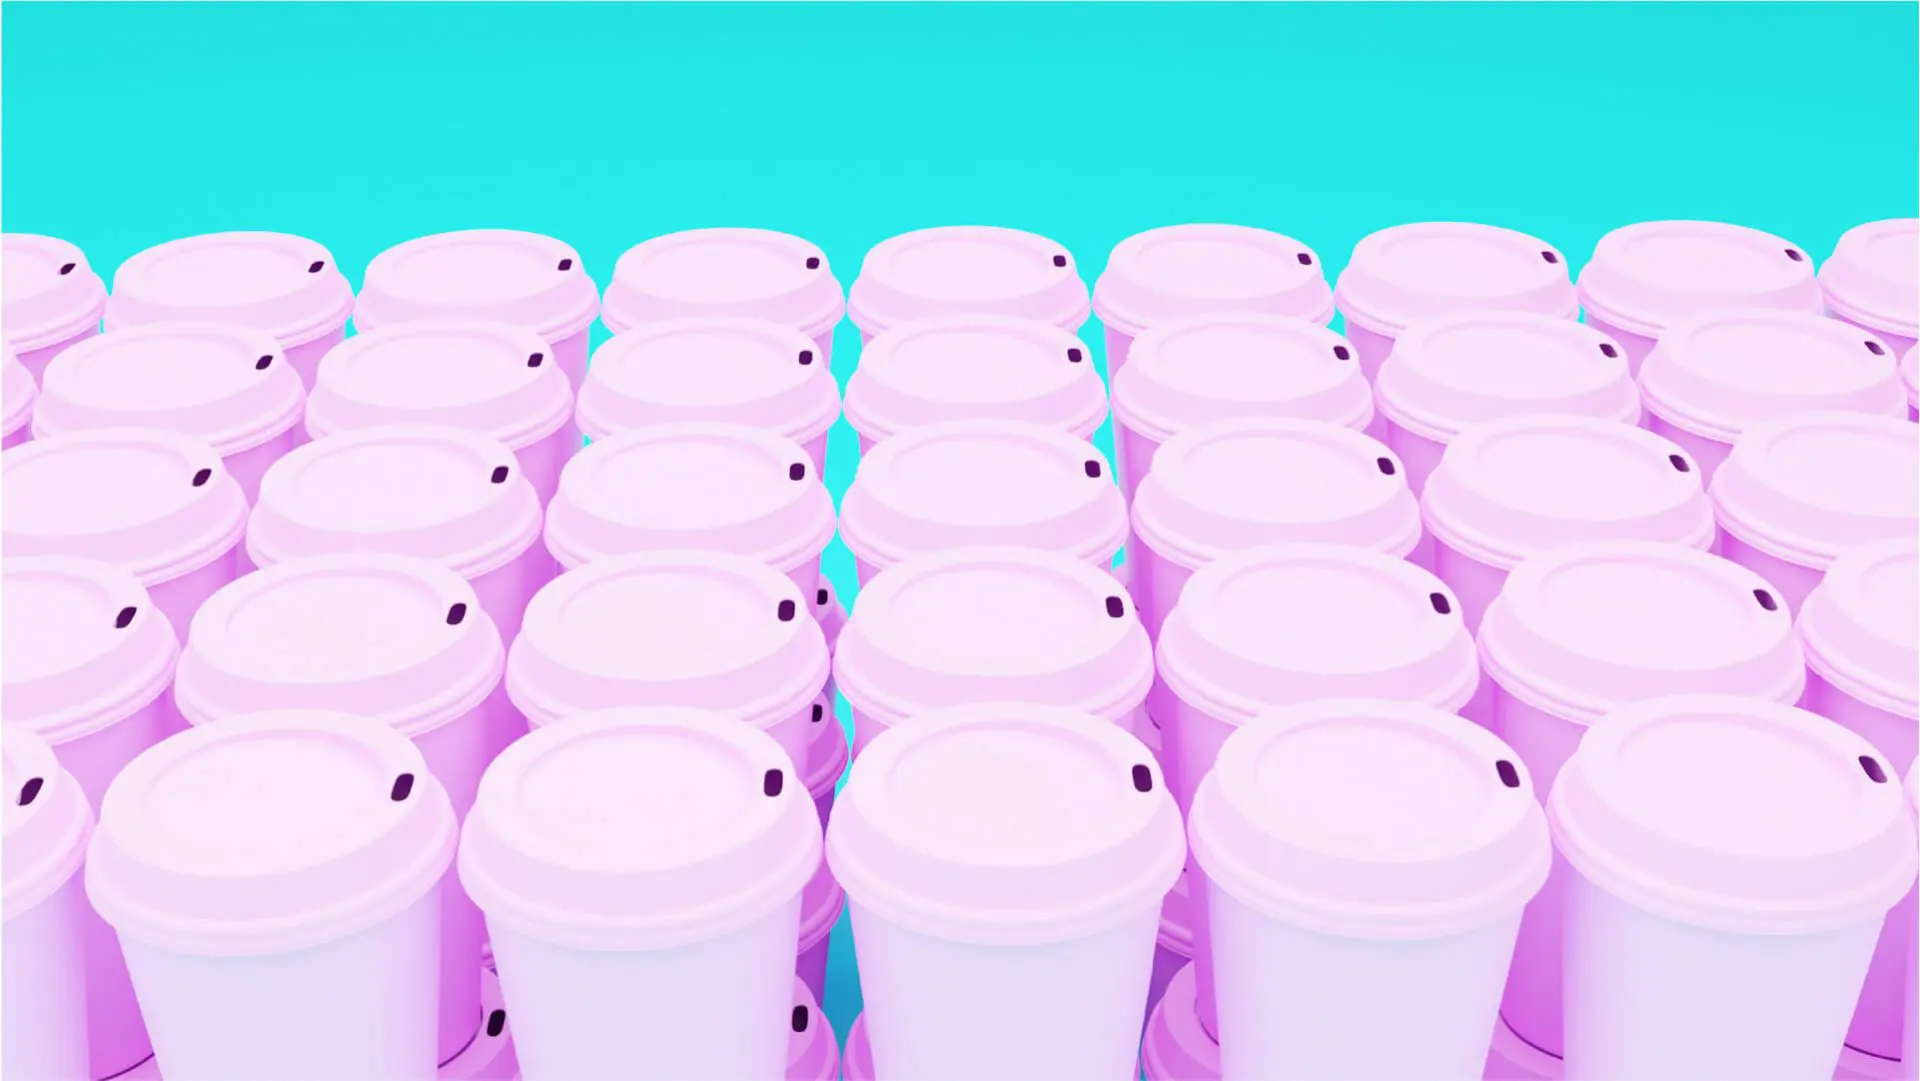 Sustainable Design - plastic cups